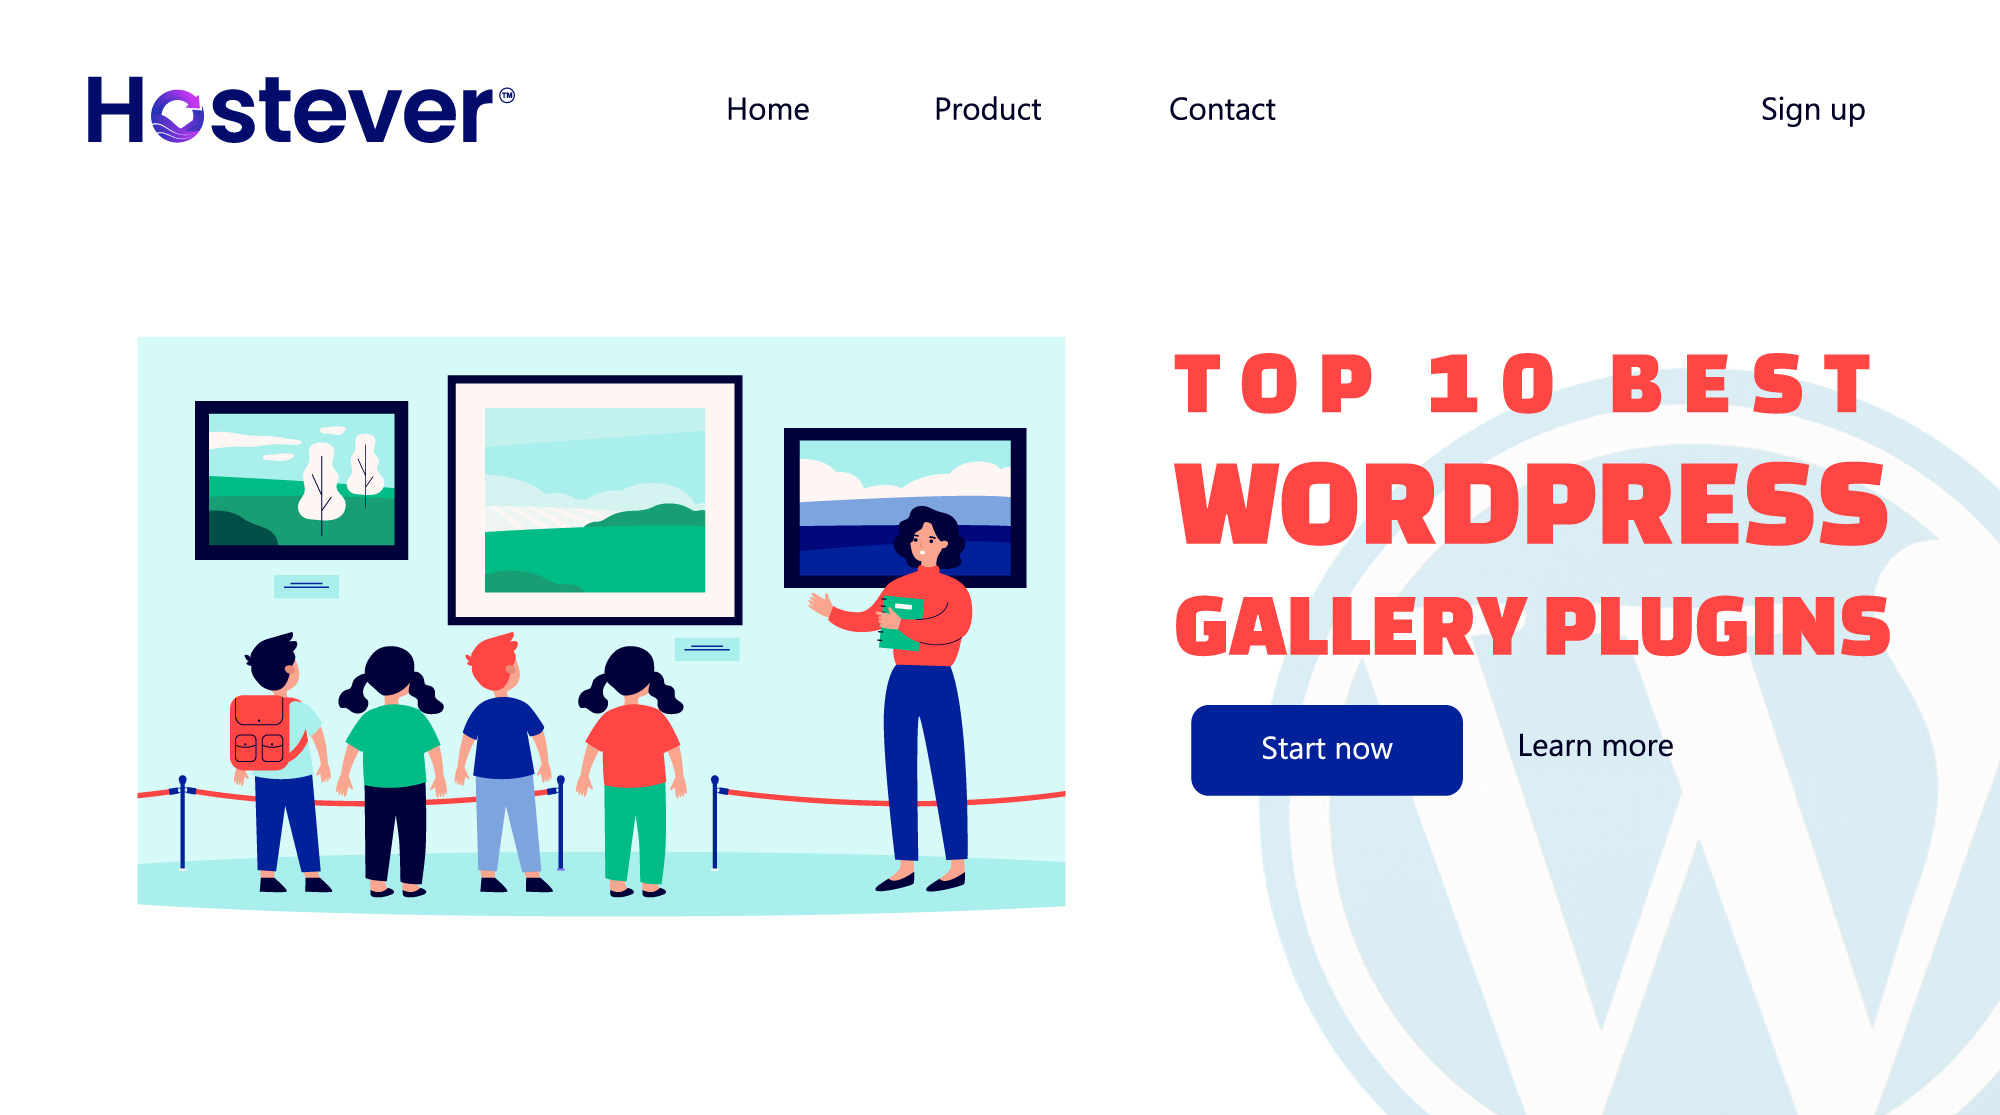 Top 10 Best WordPress Gallery Plugins